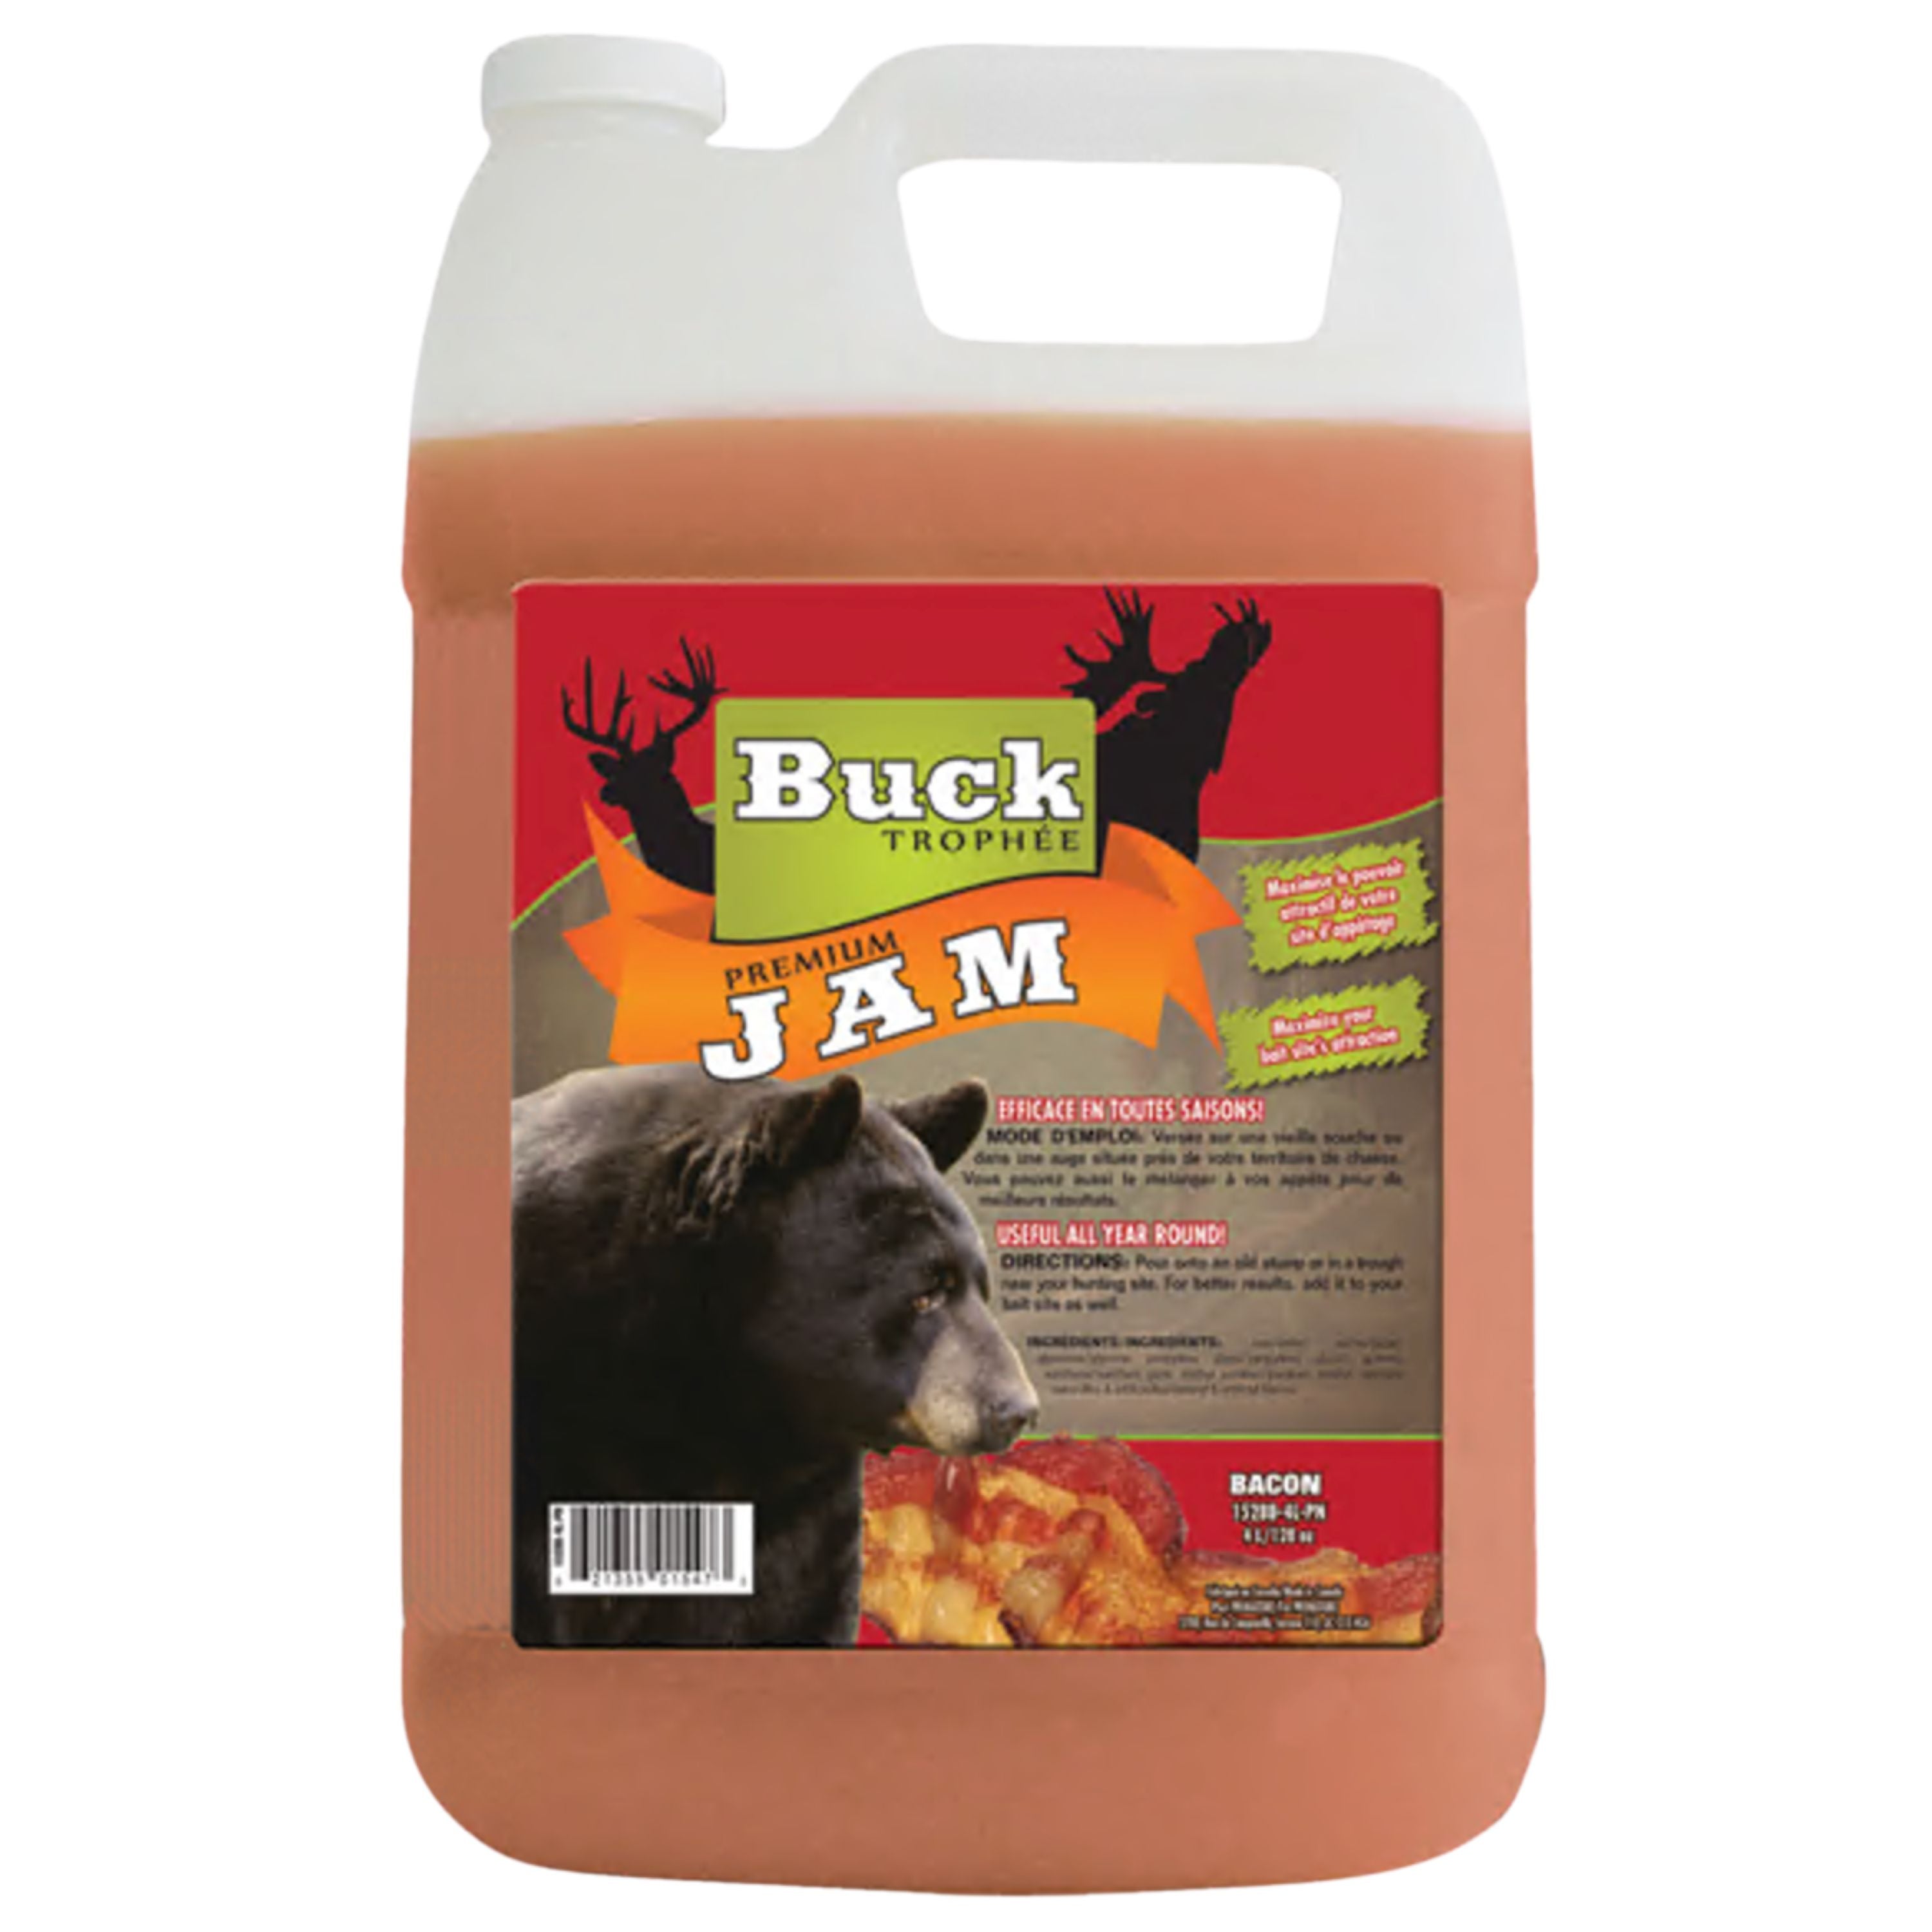 Gelée sucrée et salée "Premium Jam" à saveur de bacon - 4L